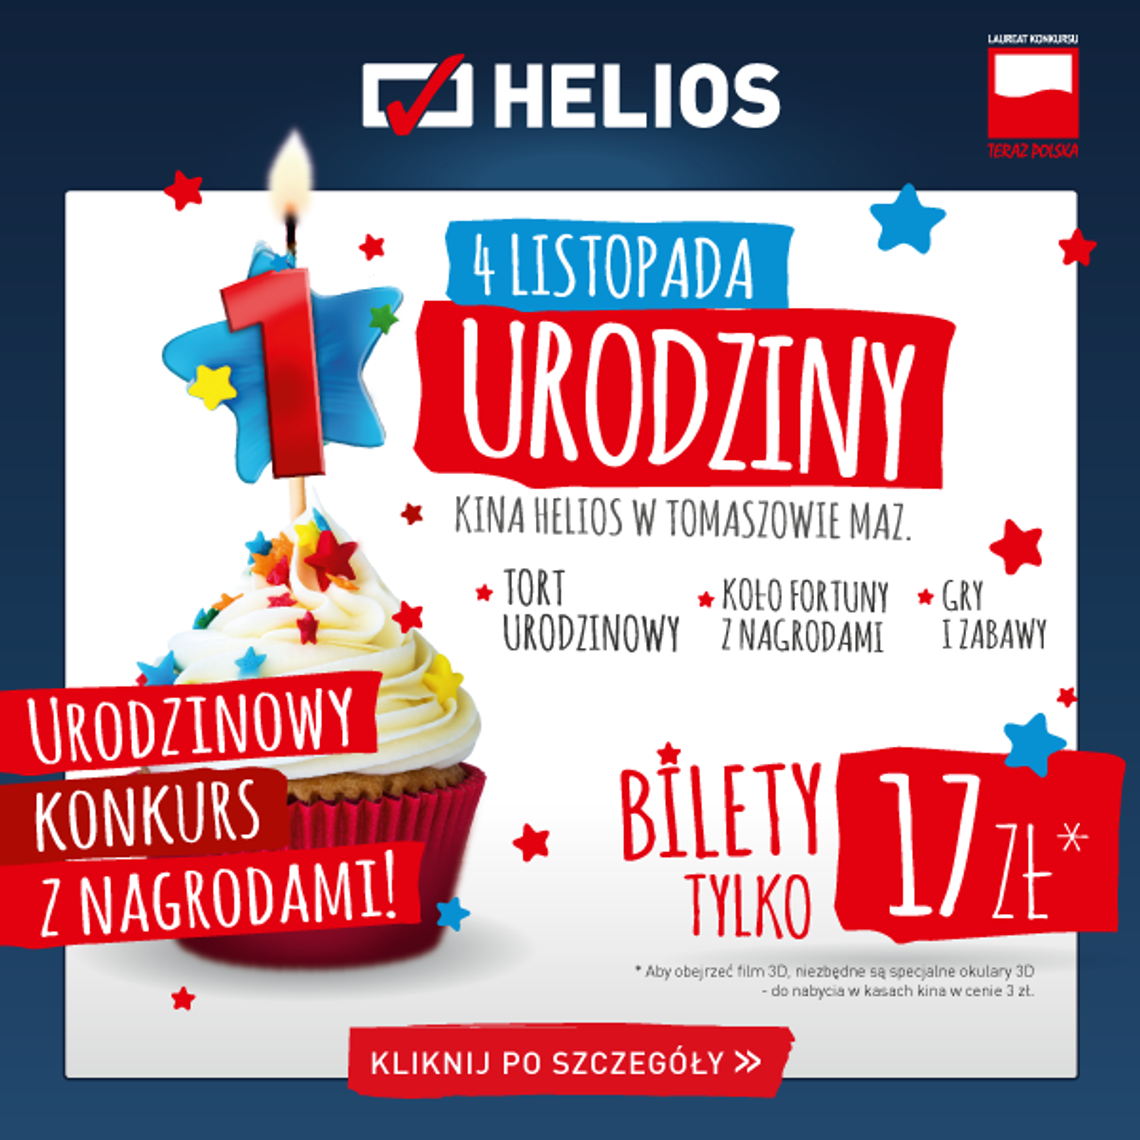 Pierwsze urodziny kina Helios w Tomaszowie!